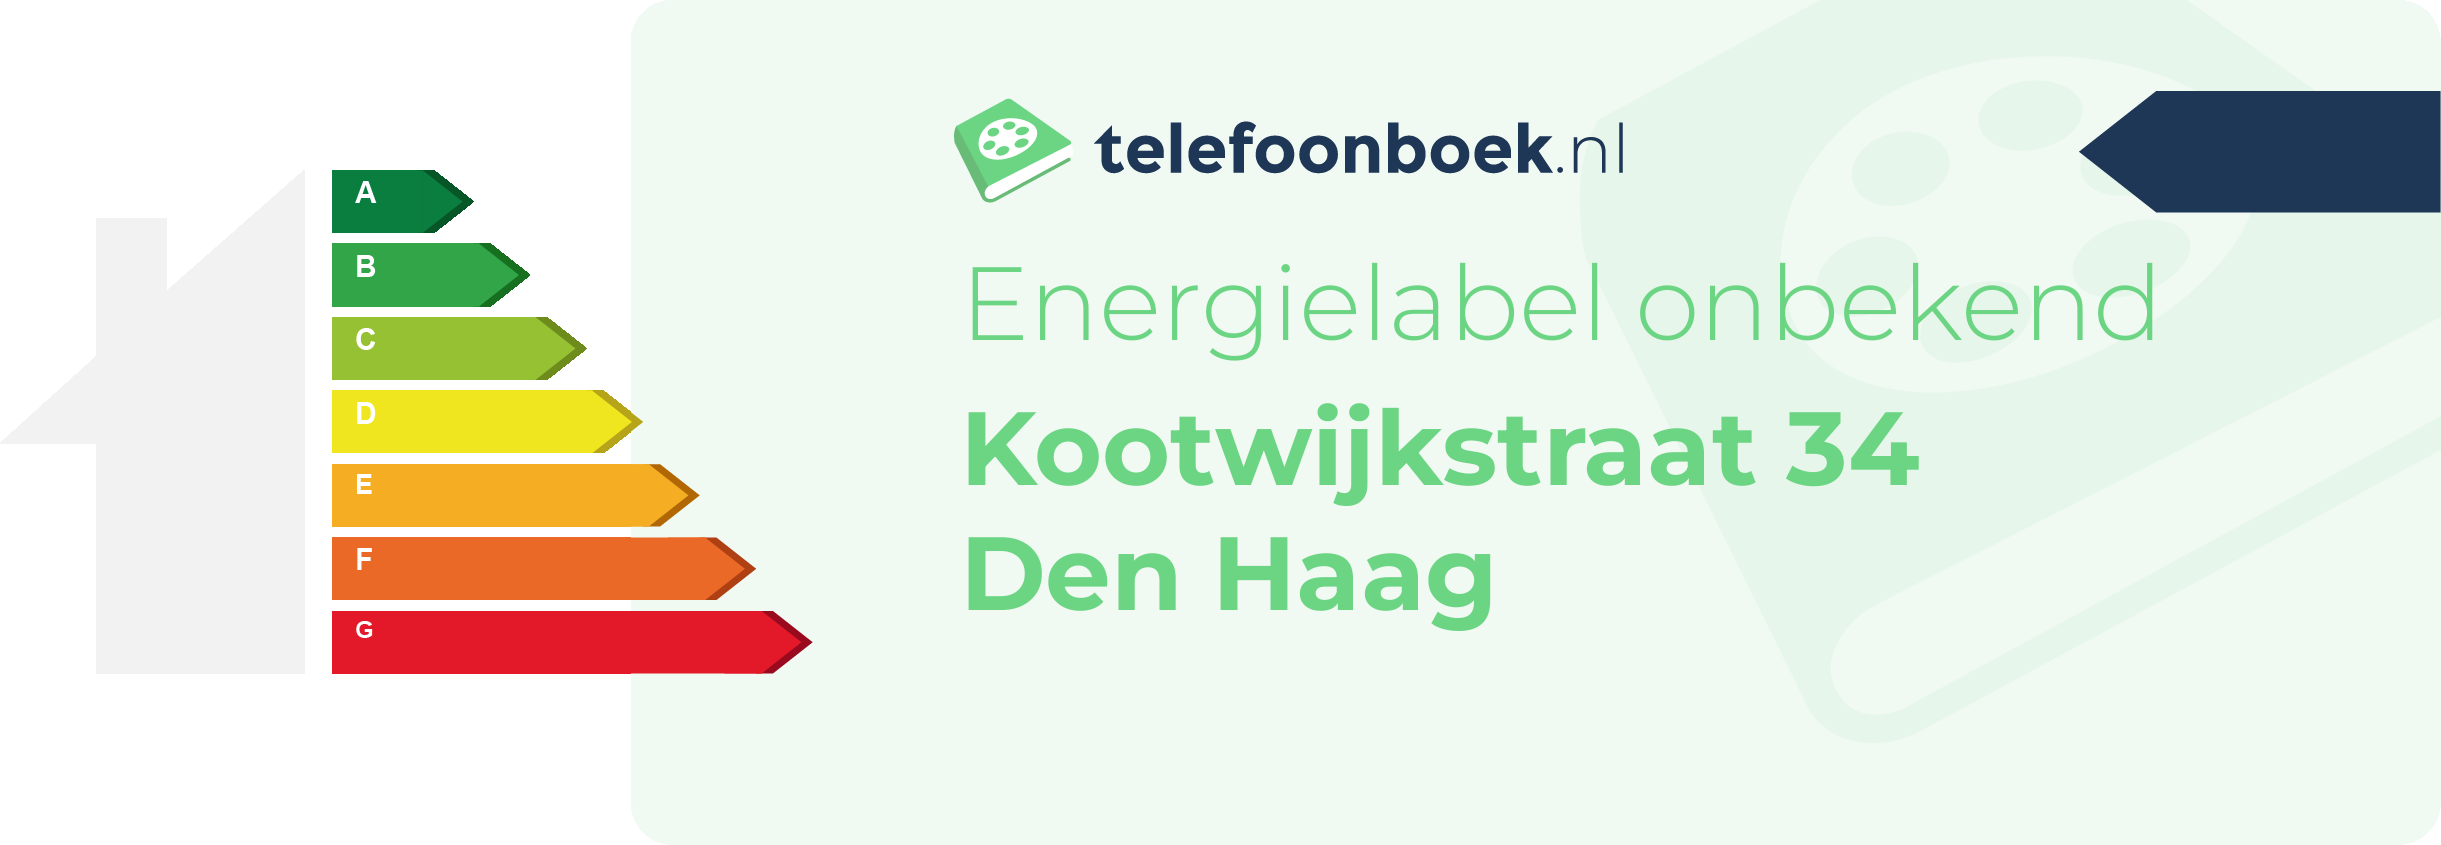 Energielabel Kootwijkstraat 34 Den Haag